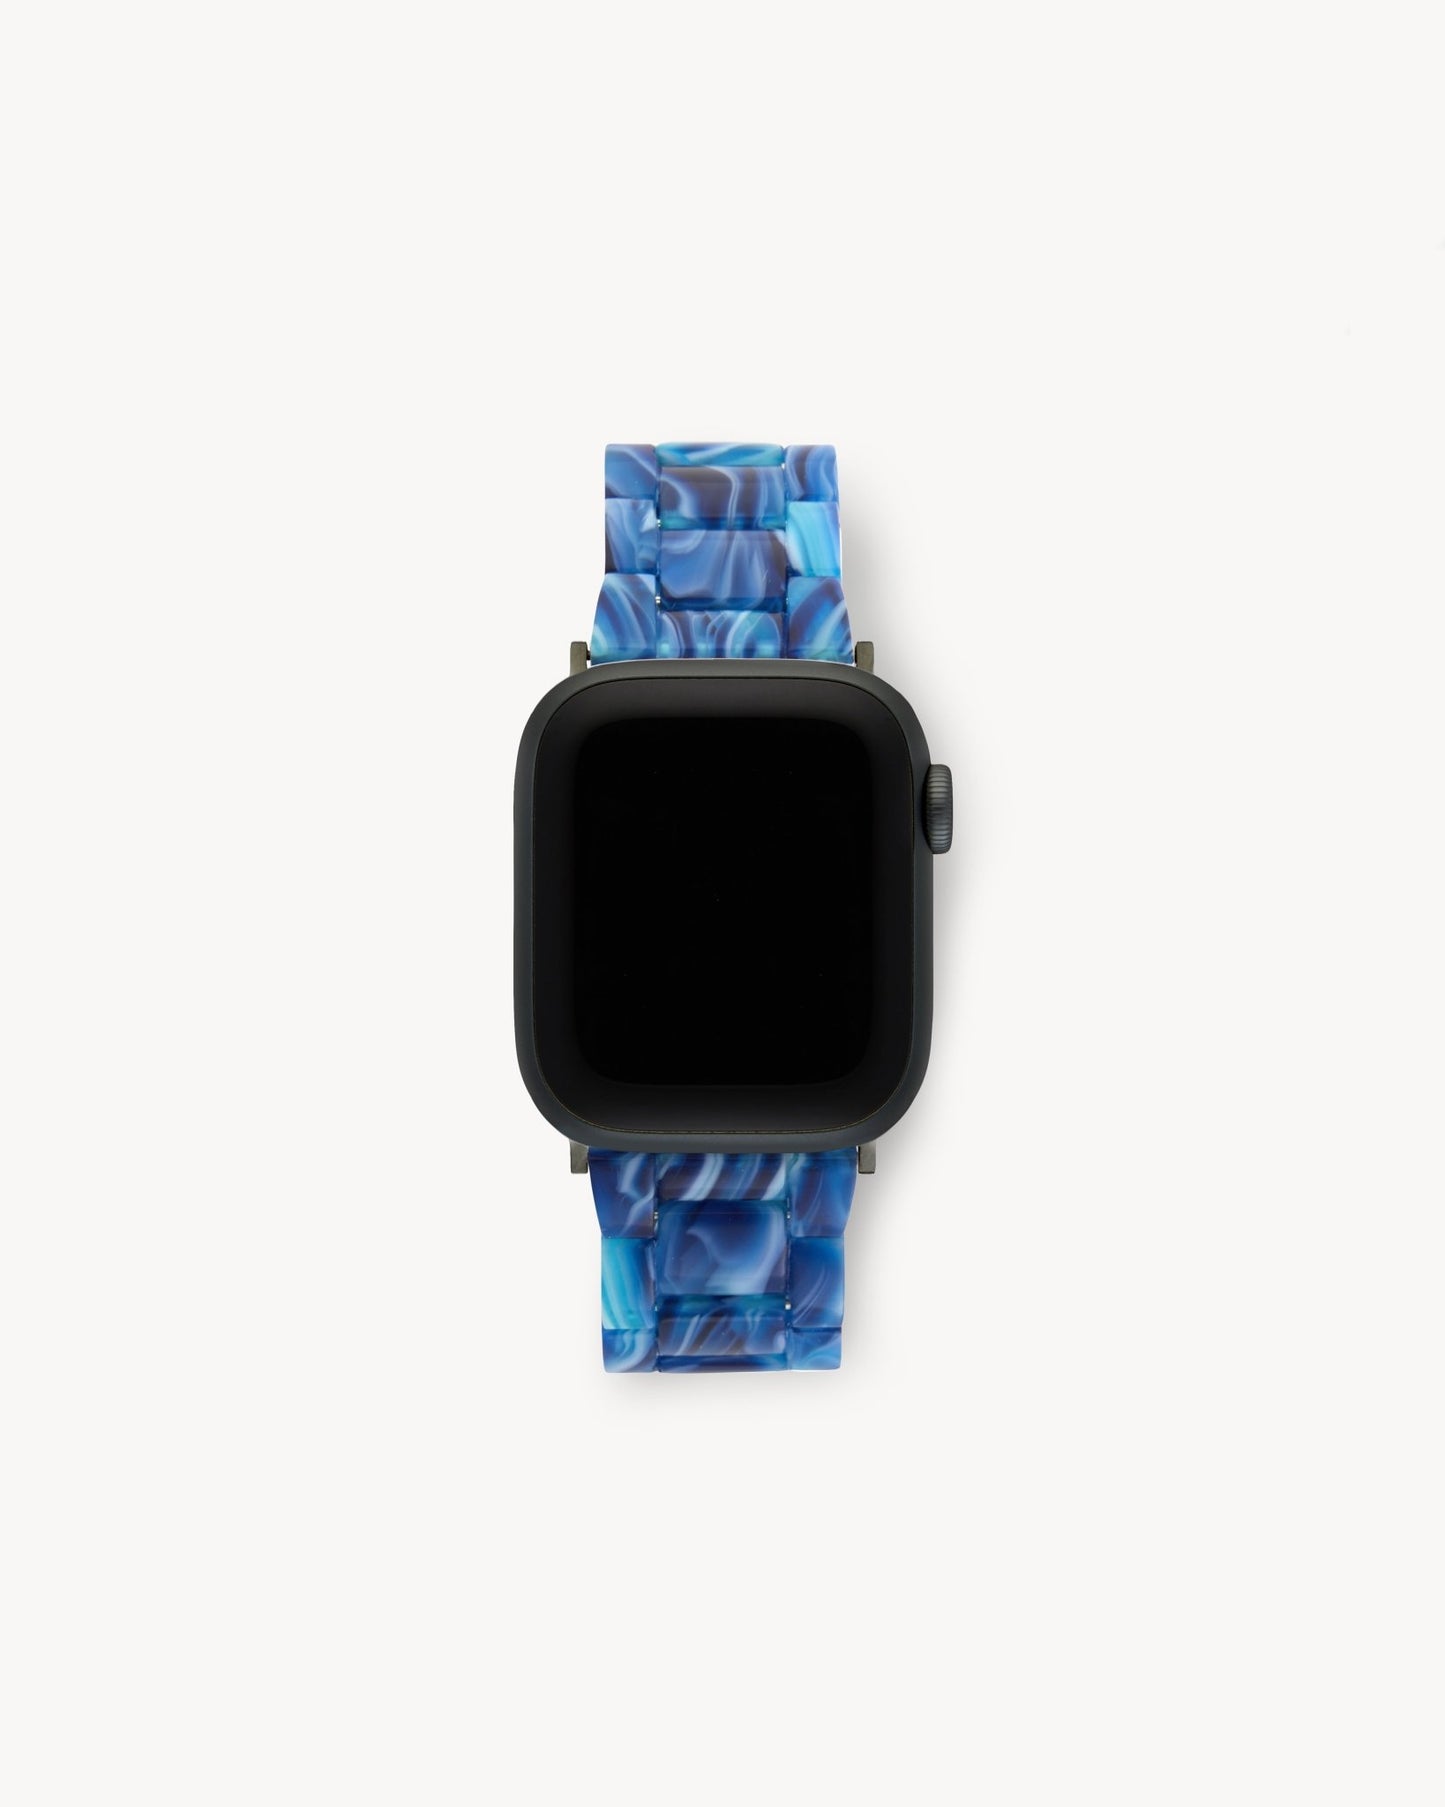 MACHETE Deluxe Apple Watch Band Set in Capri